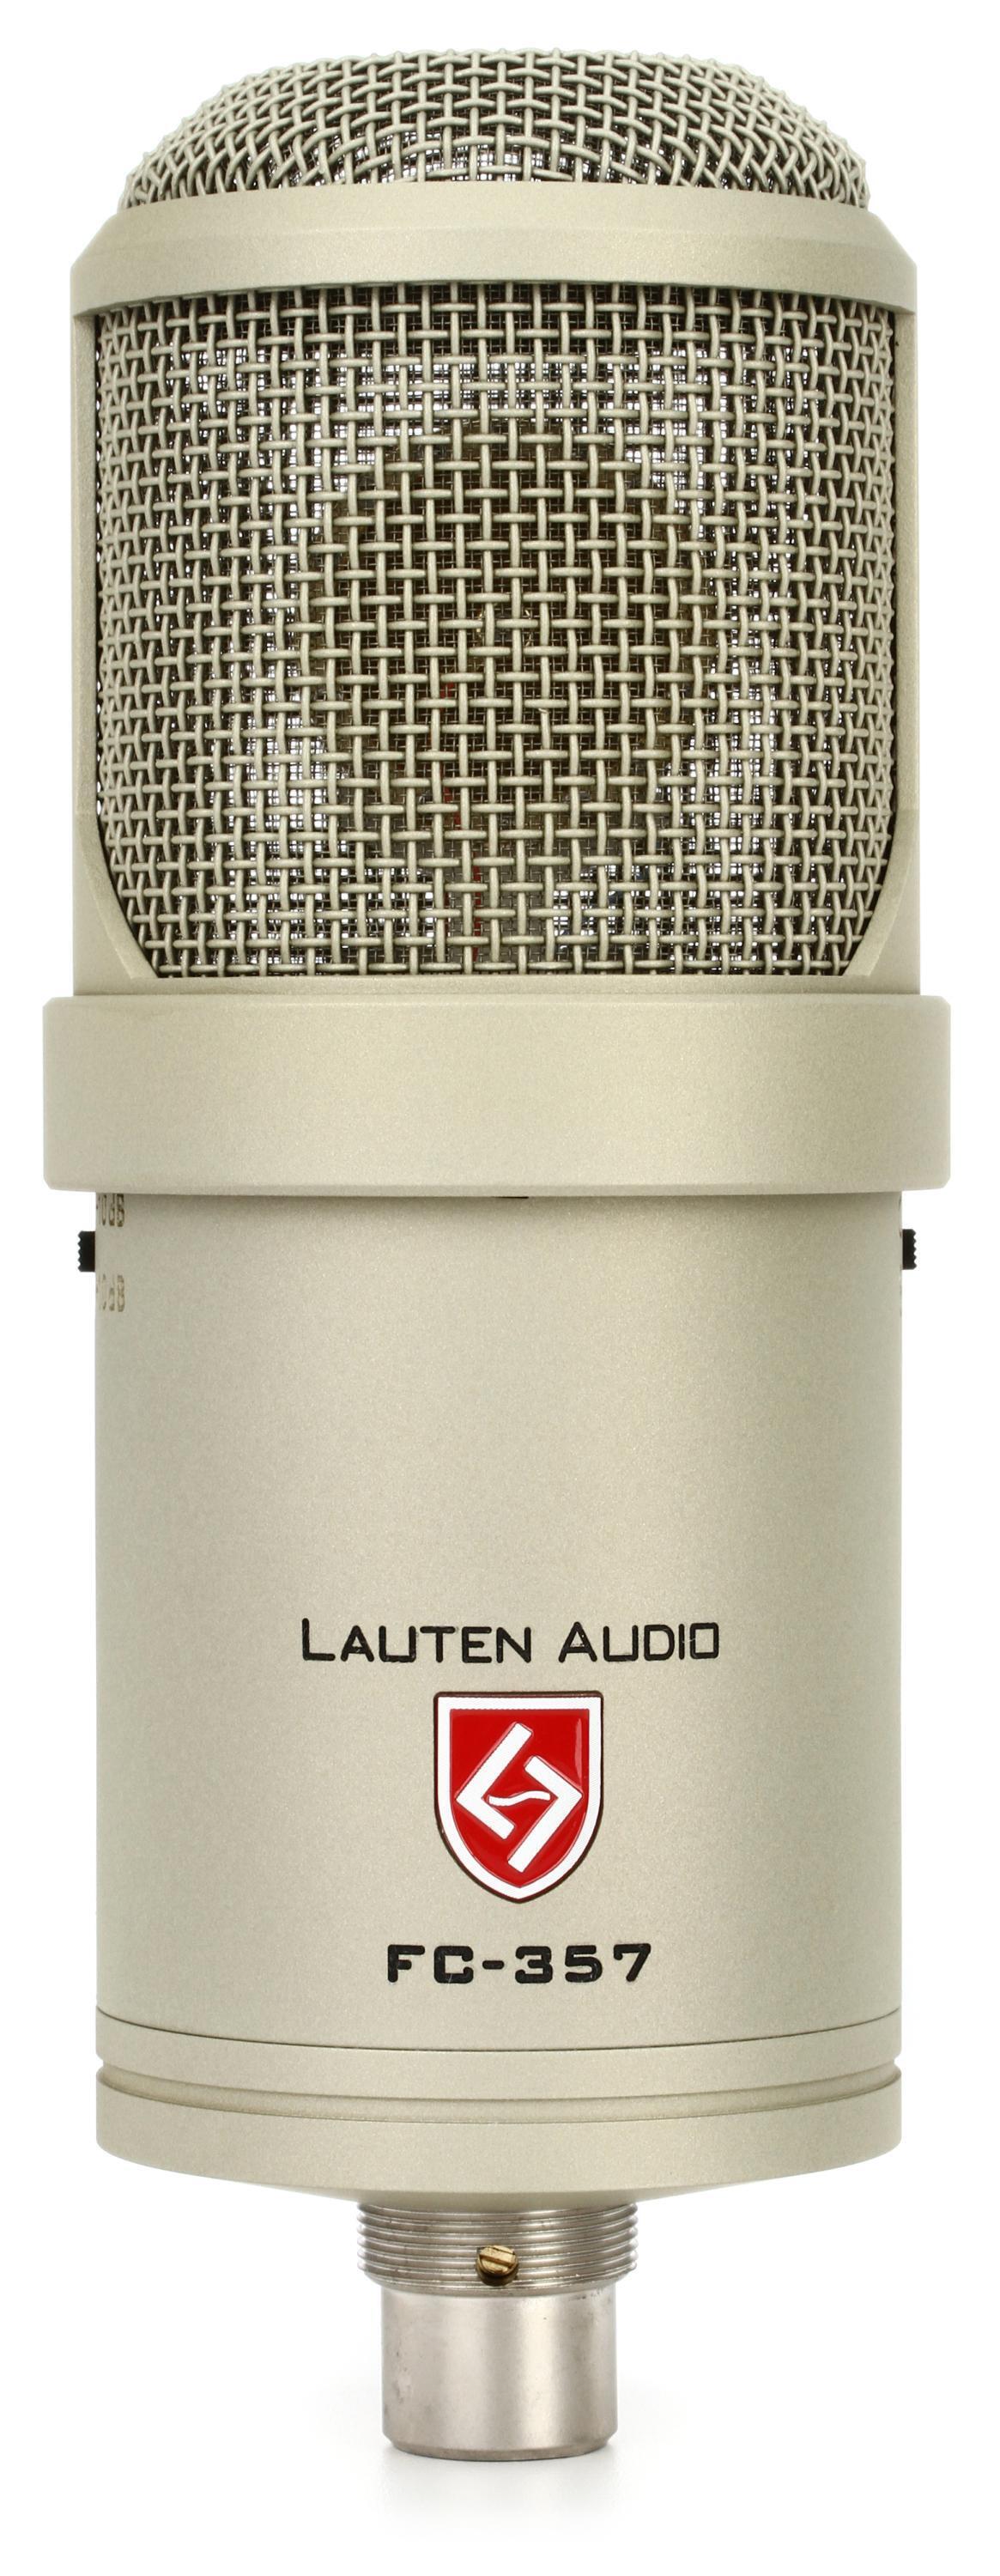 Bundled Item: Lauten Audio Clarion FC-357 Large-diaphragm Condenser Microphone